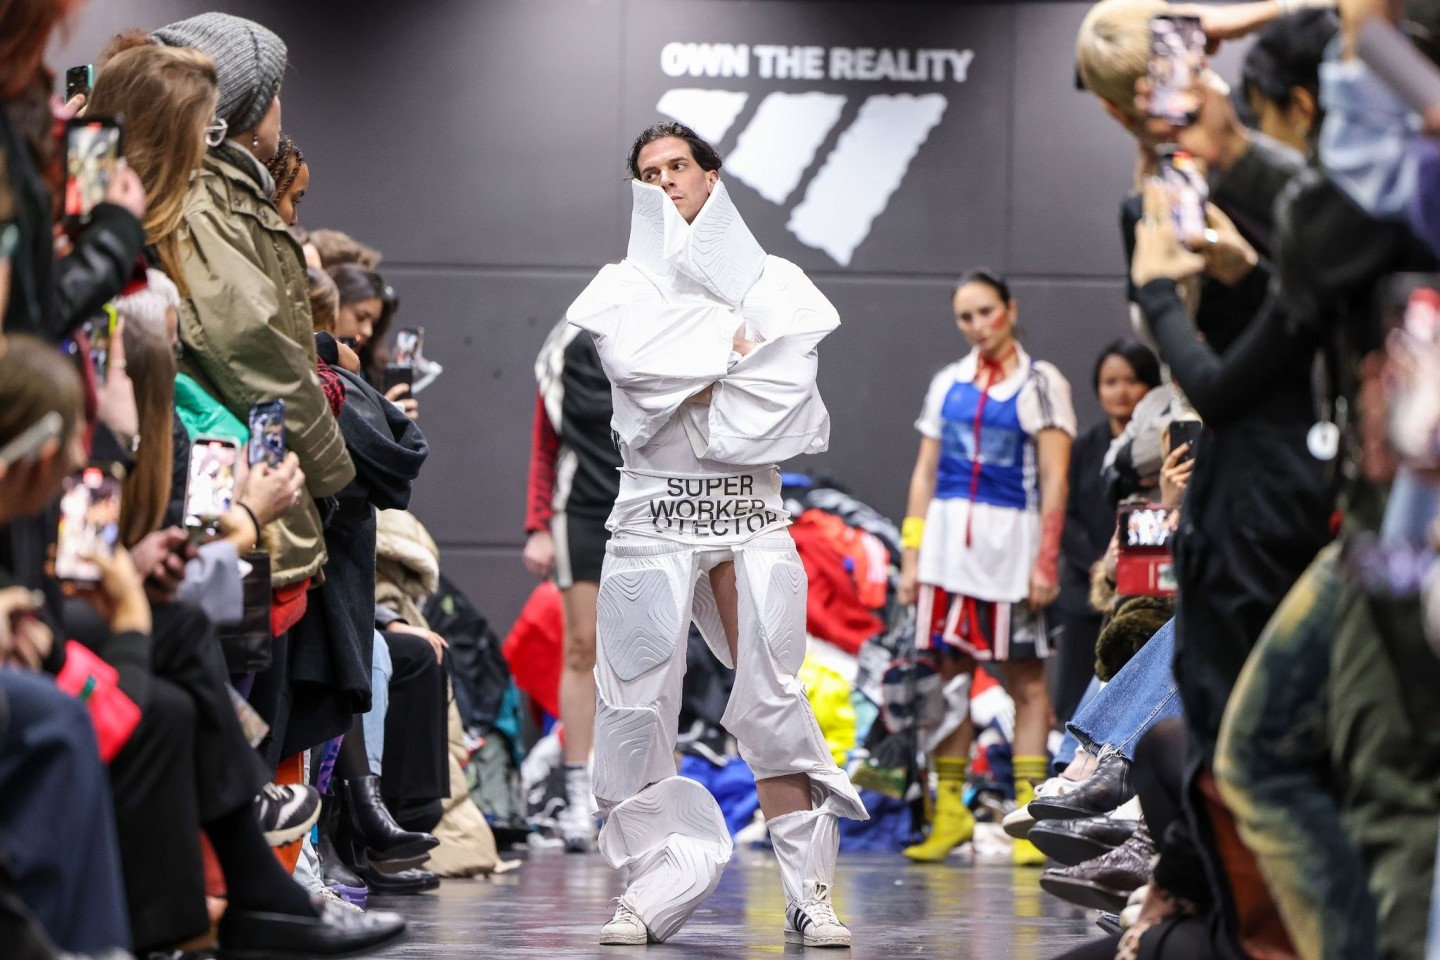 Ein Aktivist bei einer als Adidas-Show getarnten Performance auf dem Catwalk.